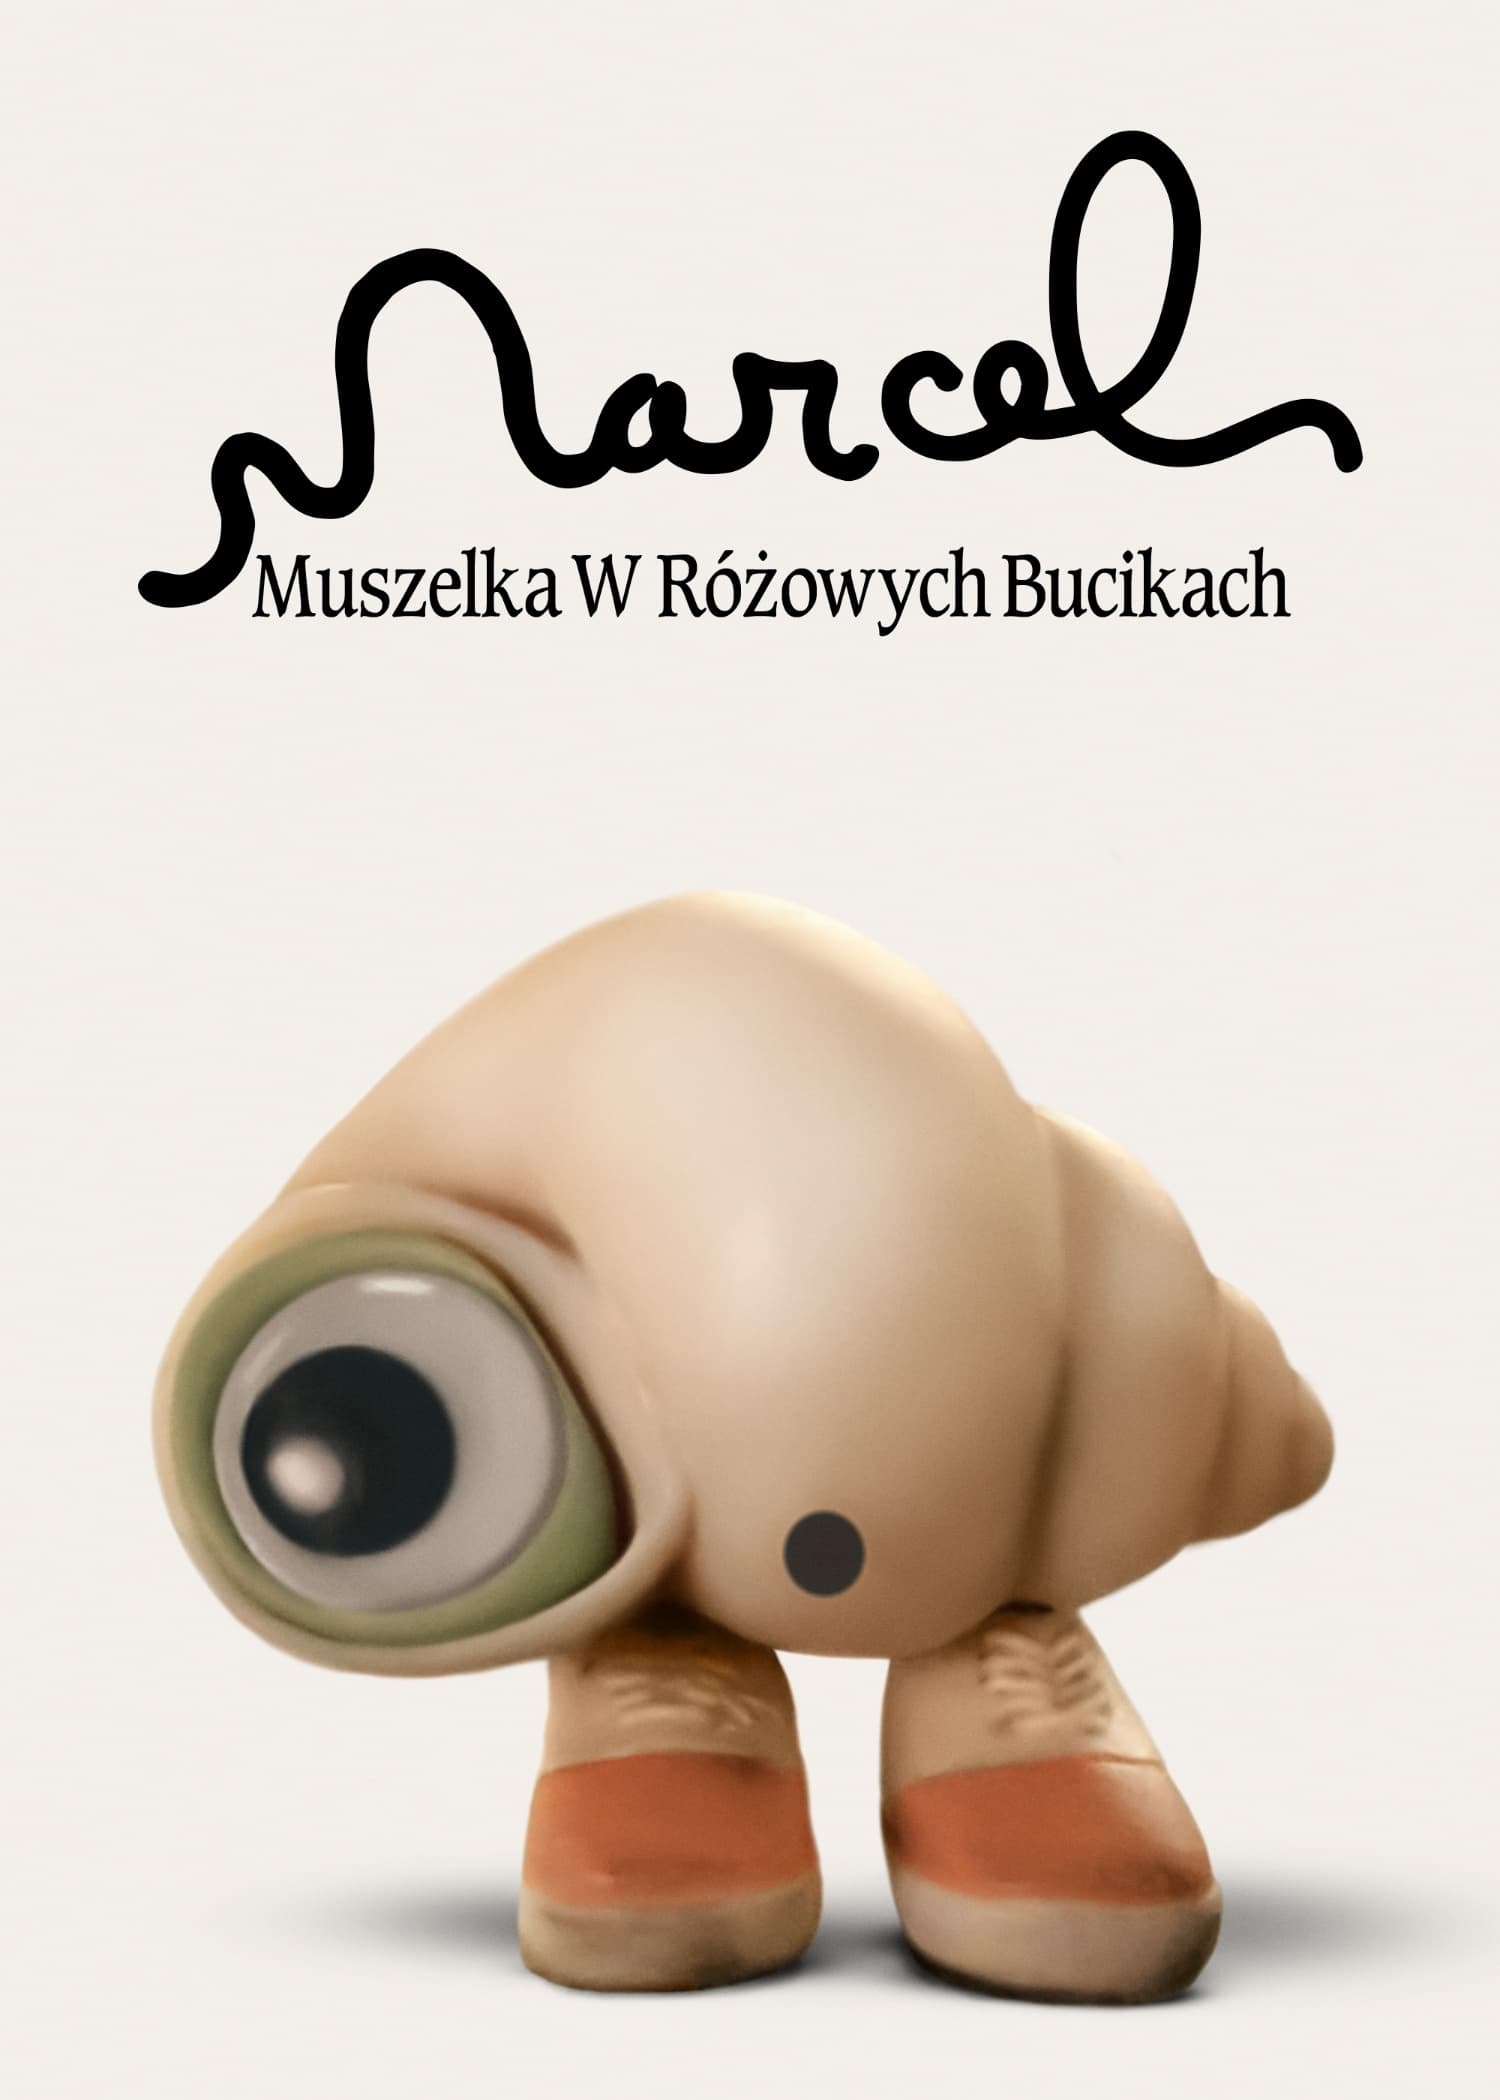 Marcel Muszelka w różowych bucikach